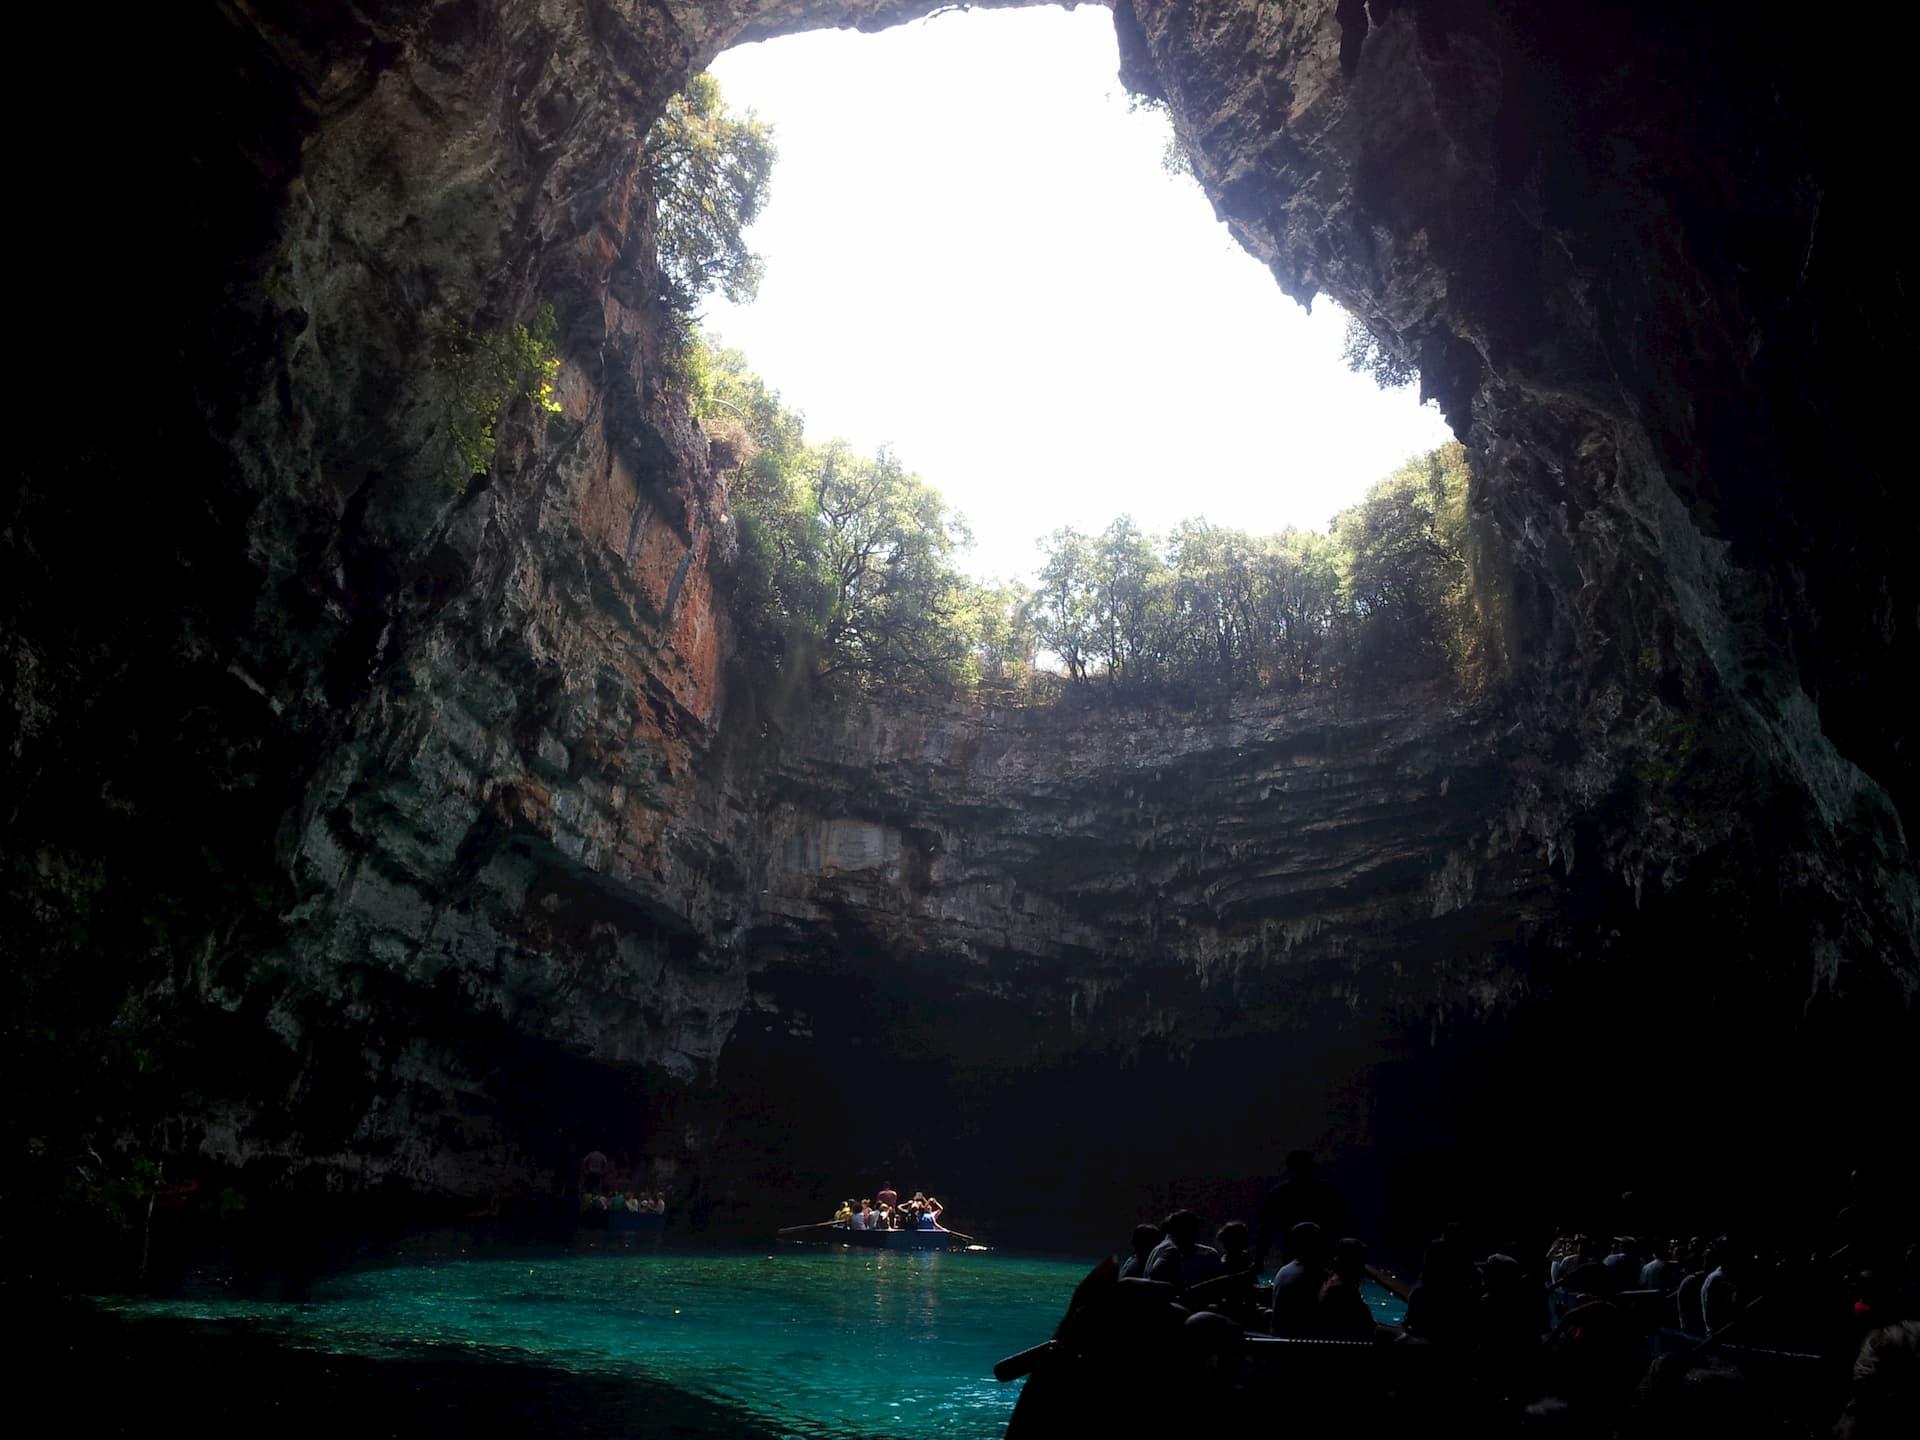 Σπήλαιο της Μελισσάνης, Σάμη